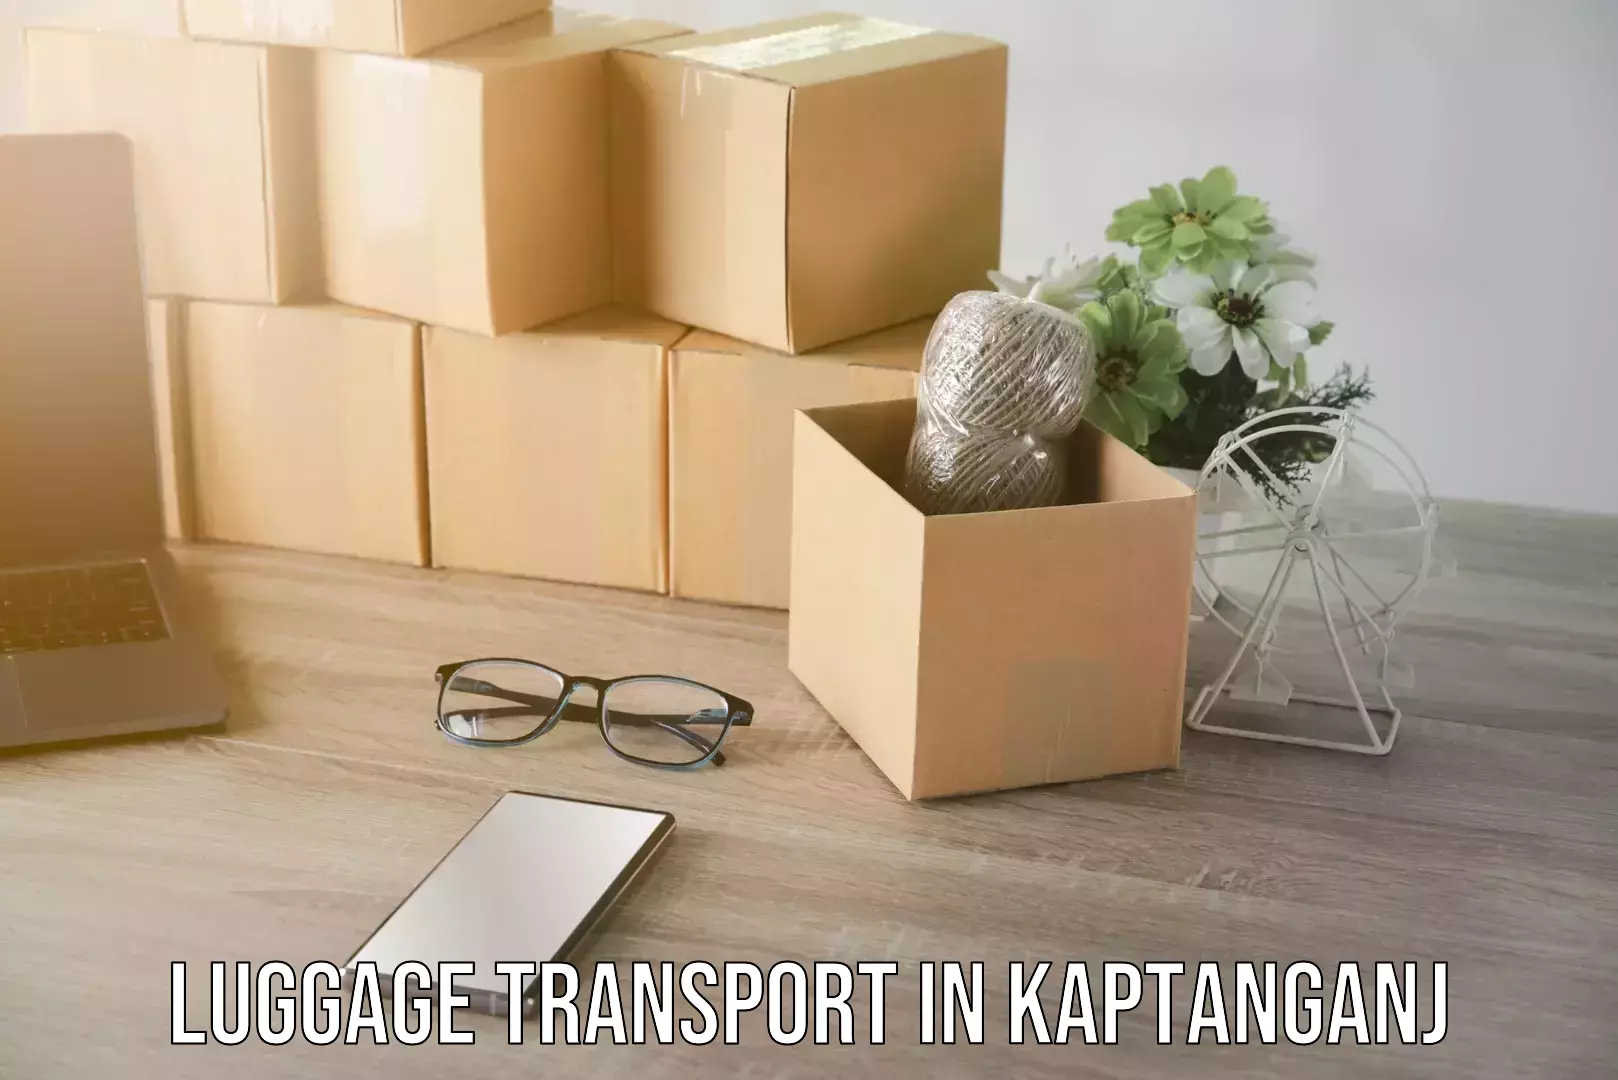 Versatile luggage courier in Kaptanganj